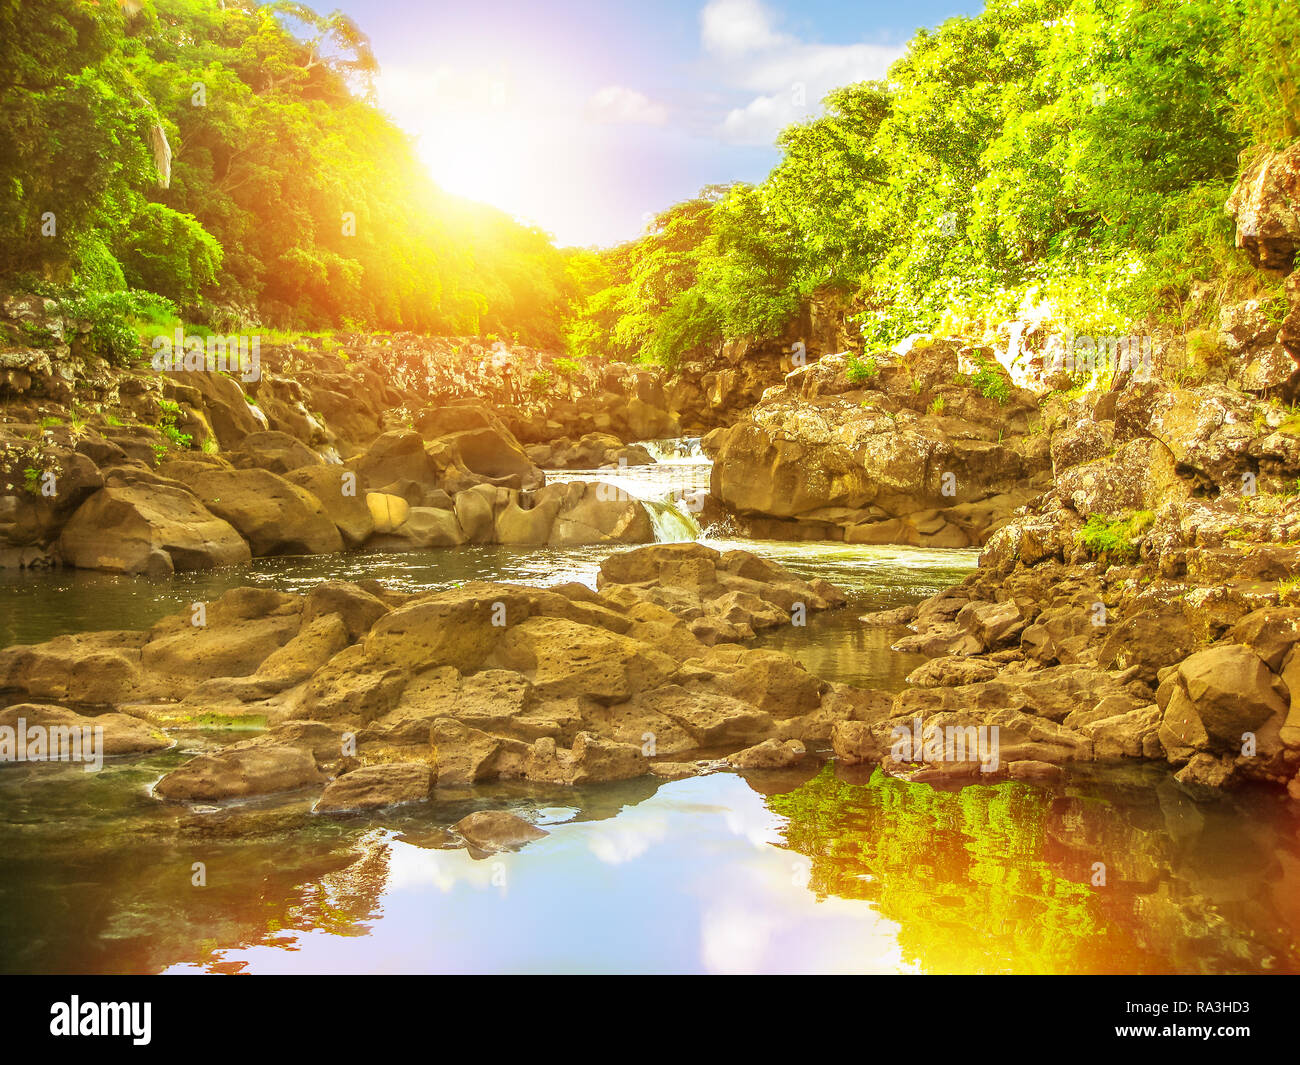 Parque Nacional Black River Gorges en luz del atardecer, el bosque protegido más grande de Mauricio, el Océano Índico, África. El paisaje se refleja en las aguas del popular destino turístico. Foto de stock